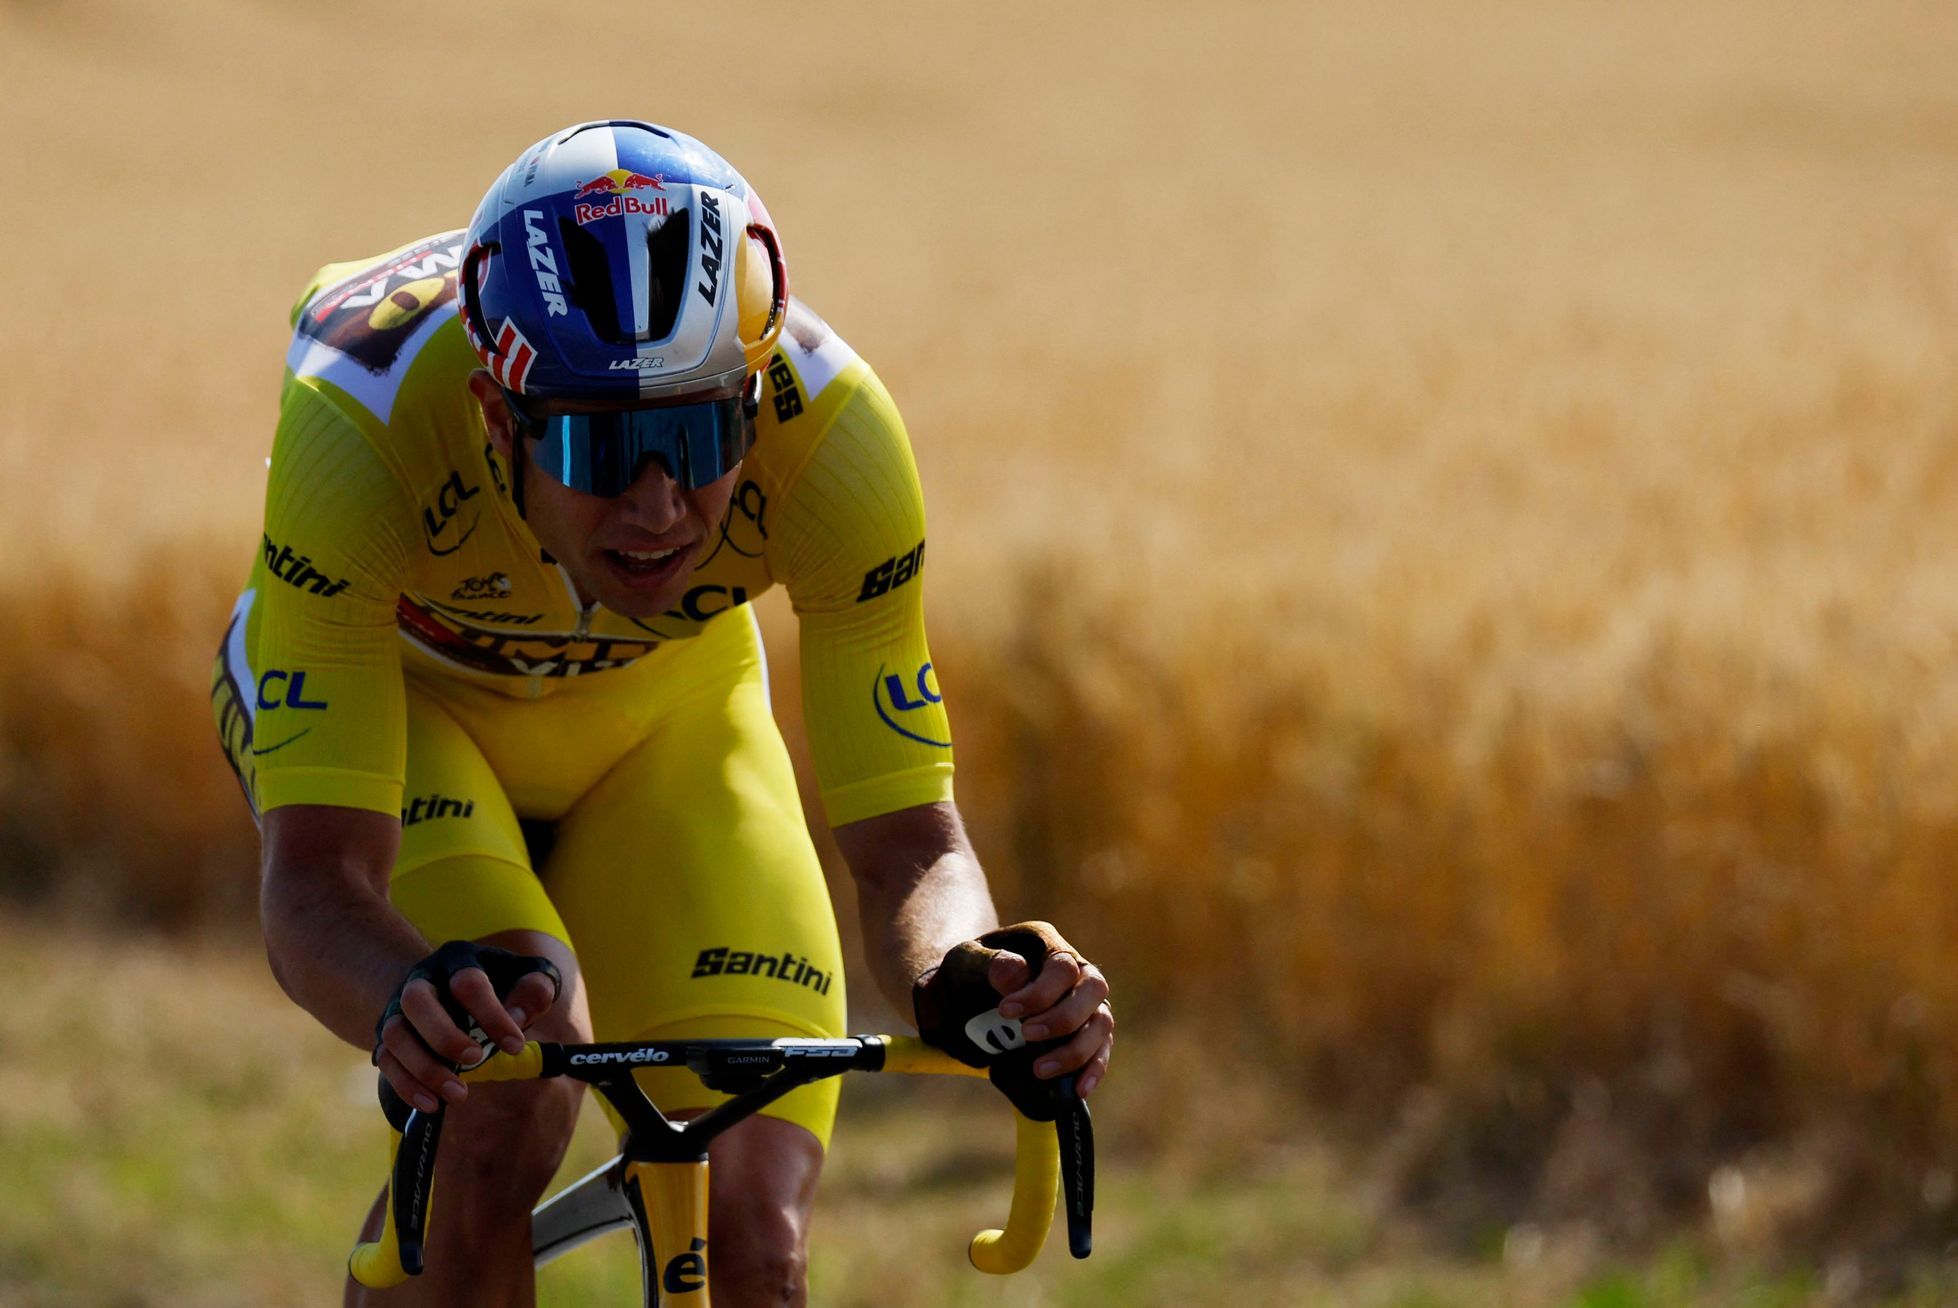 Le leader Van Aert remporte la quatrième étape du Tour de France après une bonne qualification